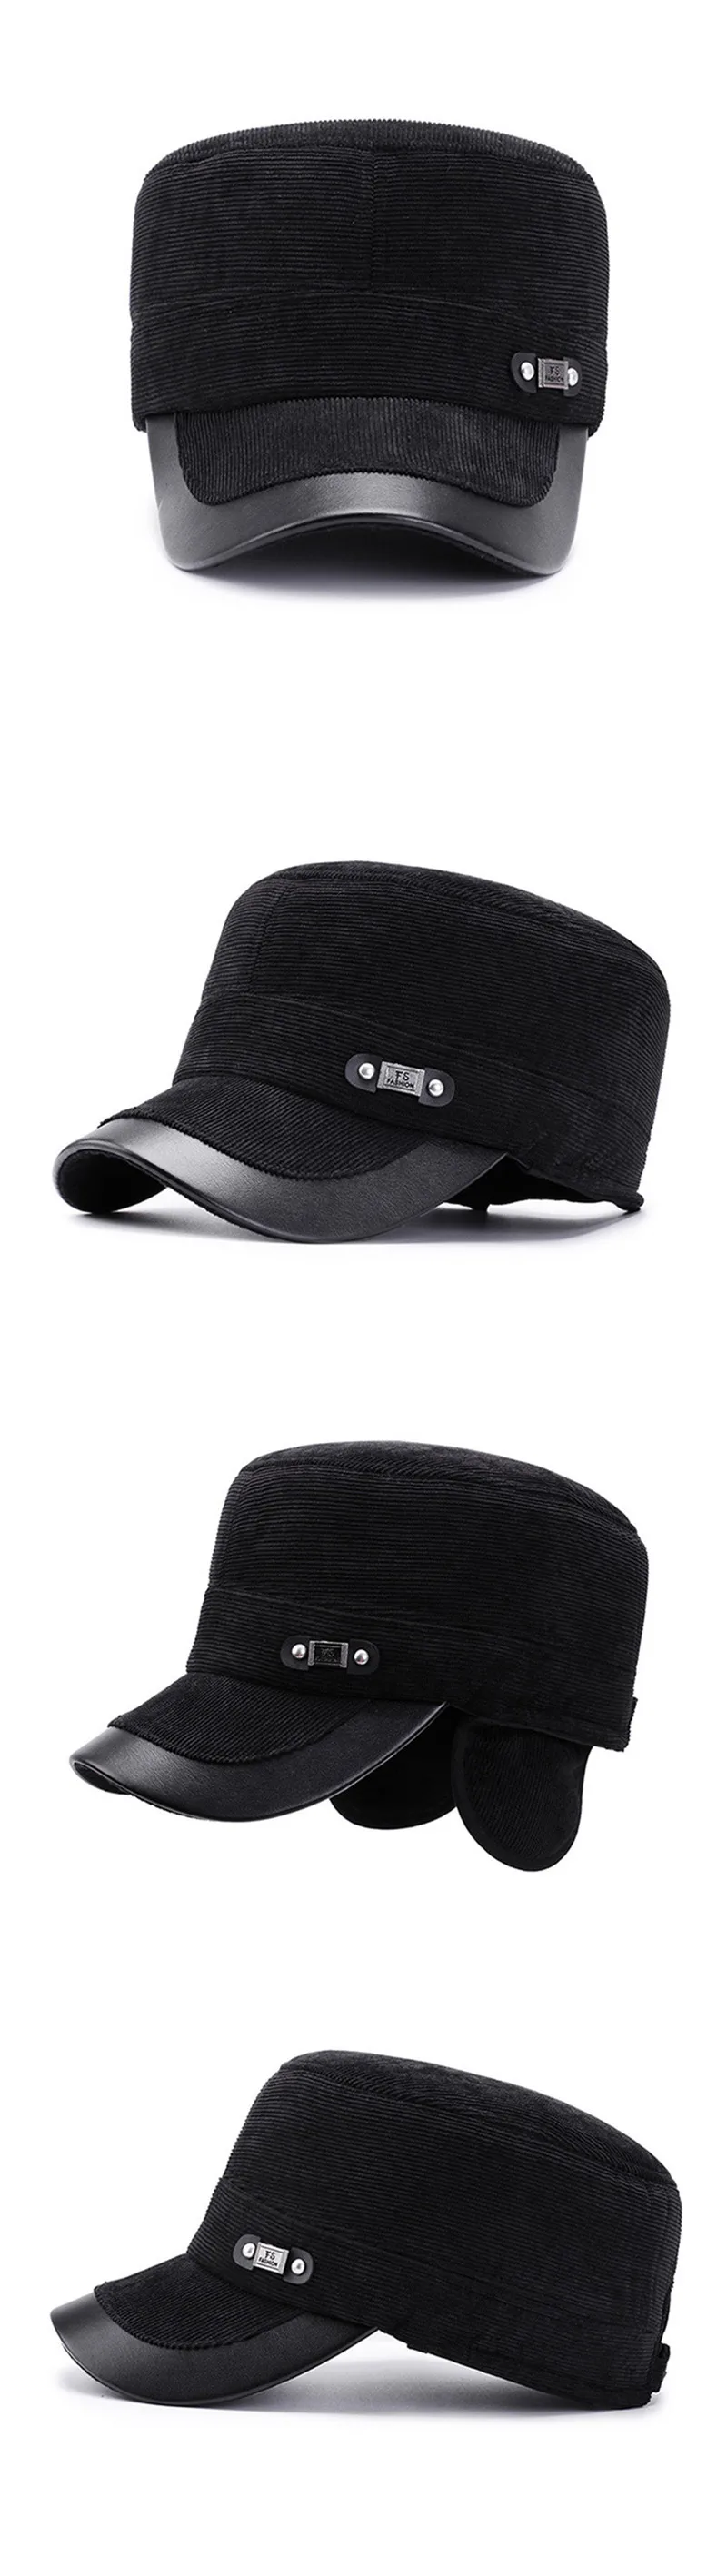 SILOQIN/зимняя мужская кепка на плоской подошве, новые модные вельветовые Теплые армейские кепки, регулируемые размеры, теплые наушники, брендовая бейсболка для папы